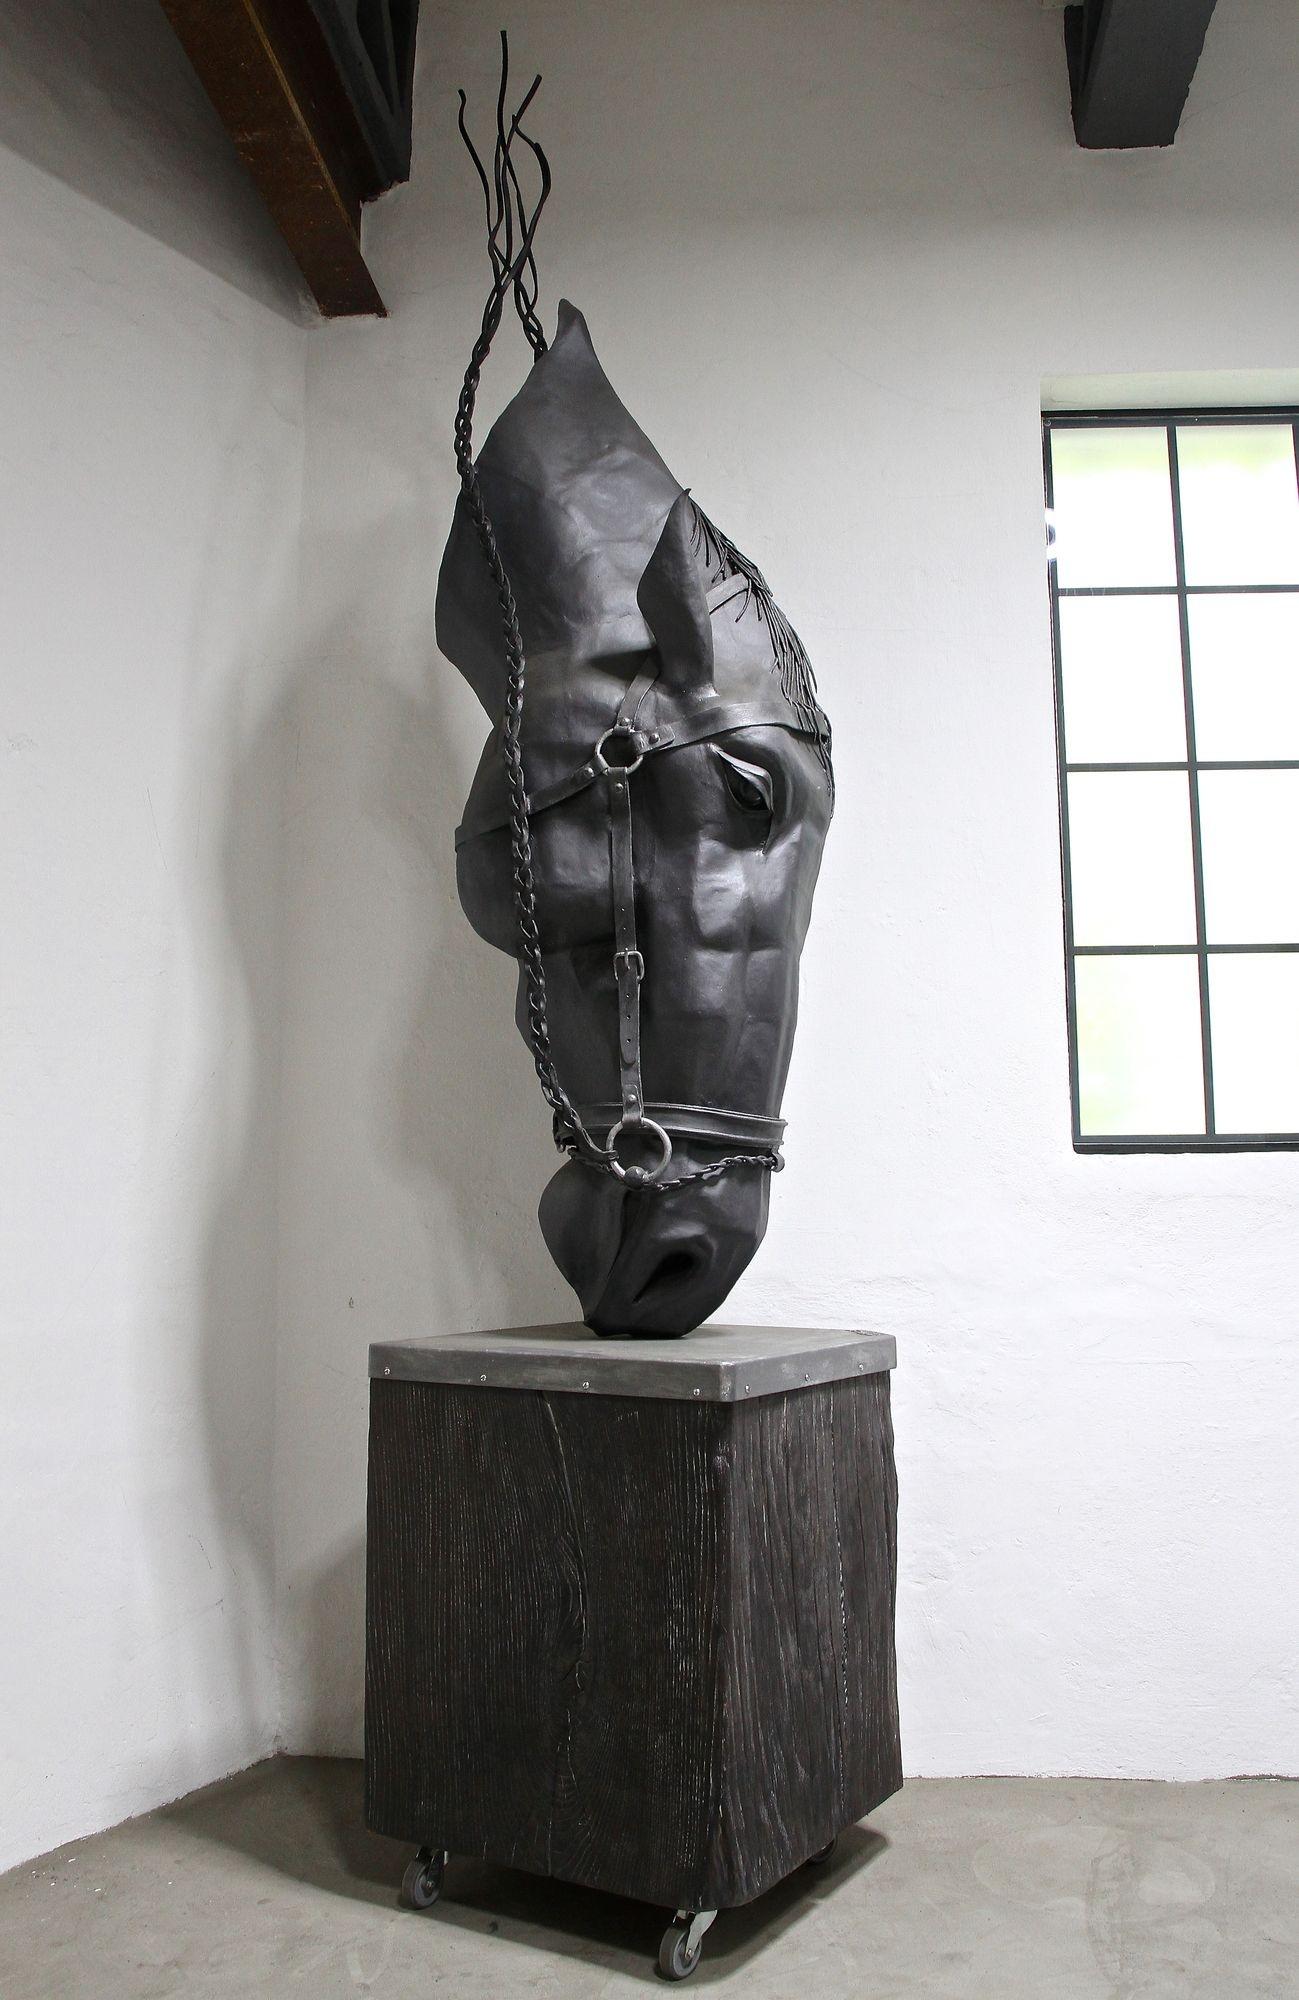 Sculpture de tête de cheval absolument spectaculaire, forgée à la main et conçue par le célèbre forgeron d'art autrichien Gerald Fössl. L'énorme et incroyable sculpture métallique artisanale de cheval est le résultat de plus de 580 heures de